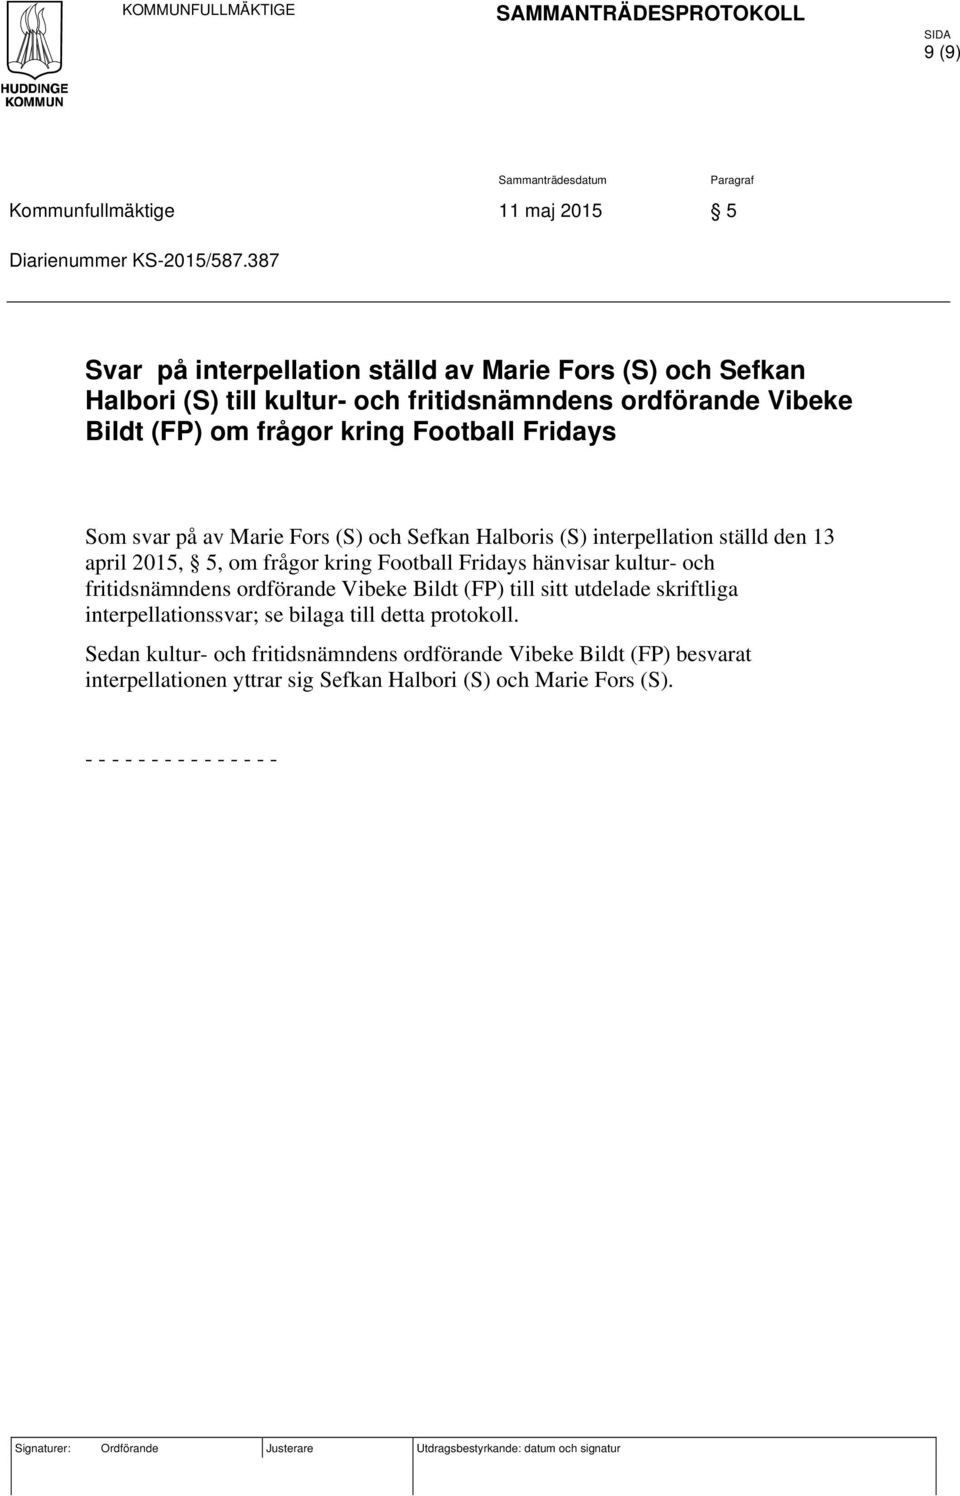 och Sefkan Halboris (S) interpellation ställd den 13 april 2015, 5, om frågor kring Football Fridays hänvisar kultur- och fritidsnämndens ordförande Vibeke Bildt (FP) till sitt utdelade skriftliga